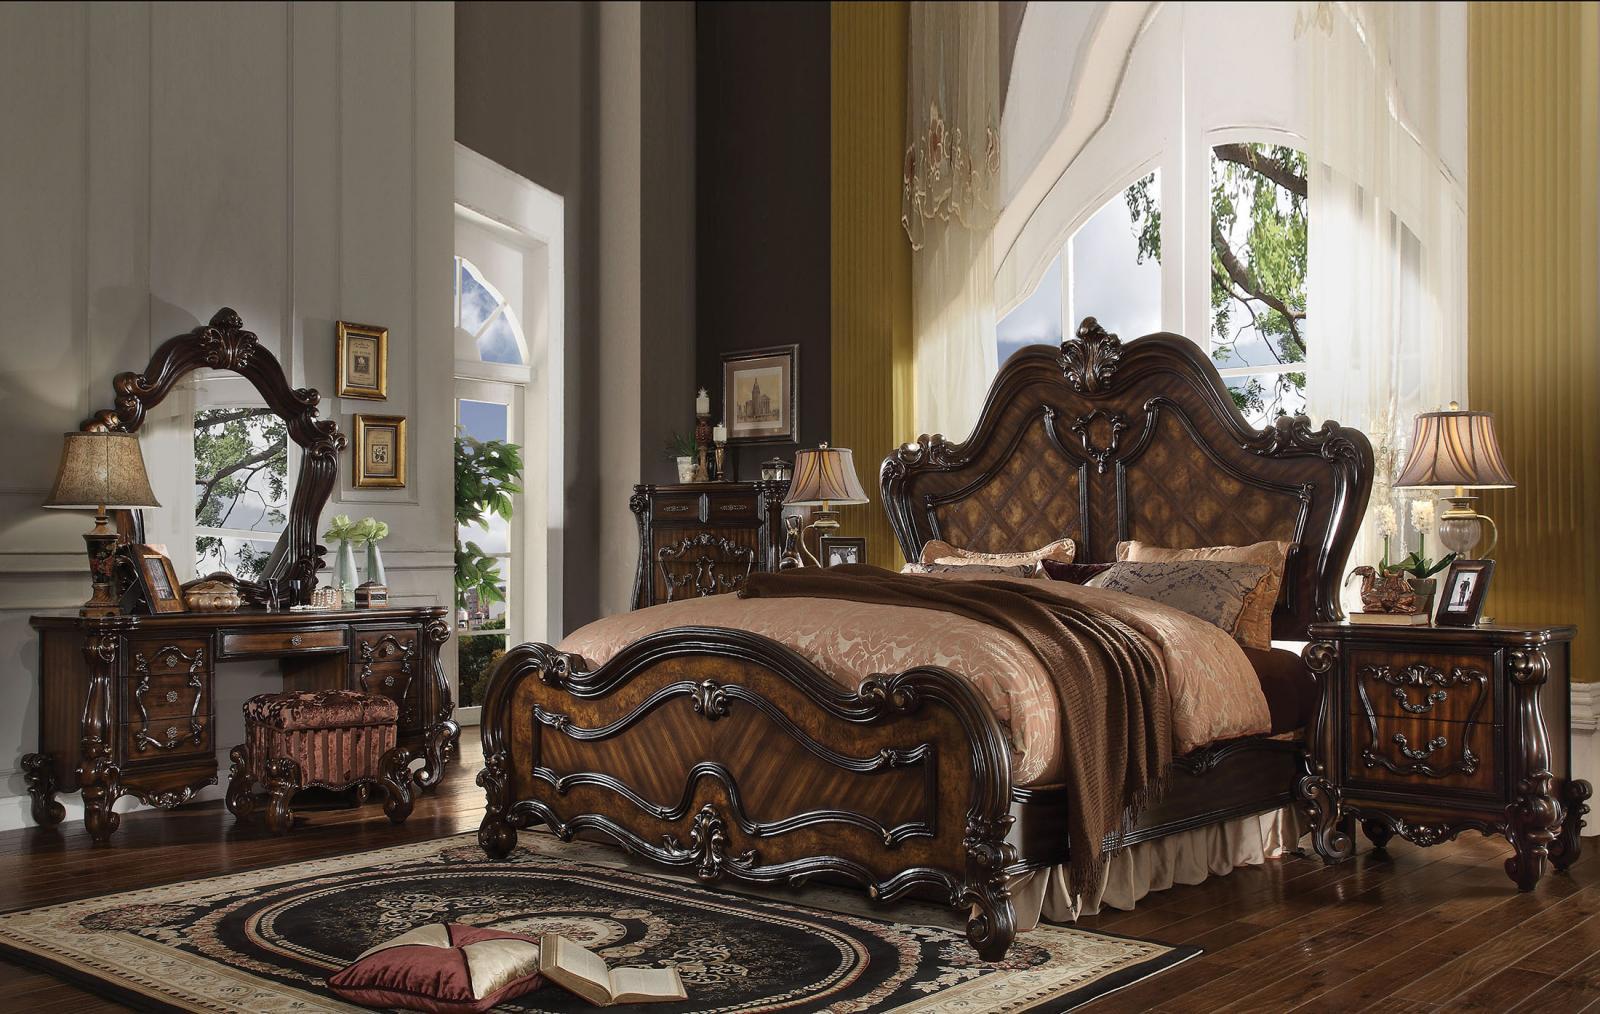 

    
Queenies Cherry Oak King Panel Standard Bedroom Set 6Pcs  Classic
